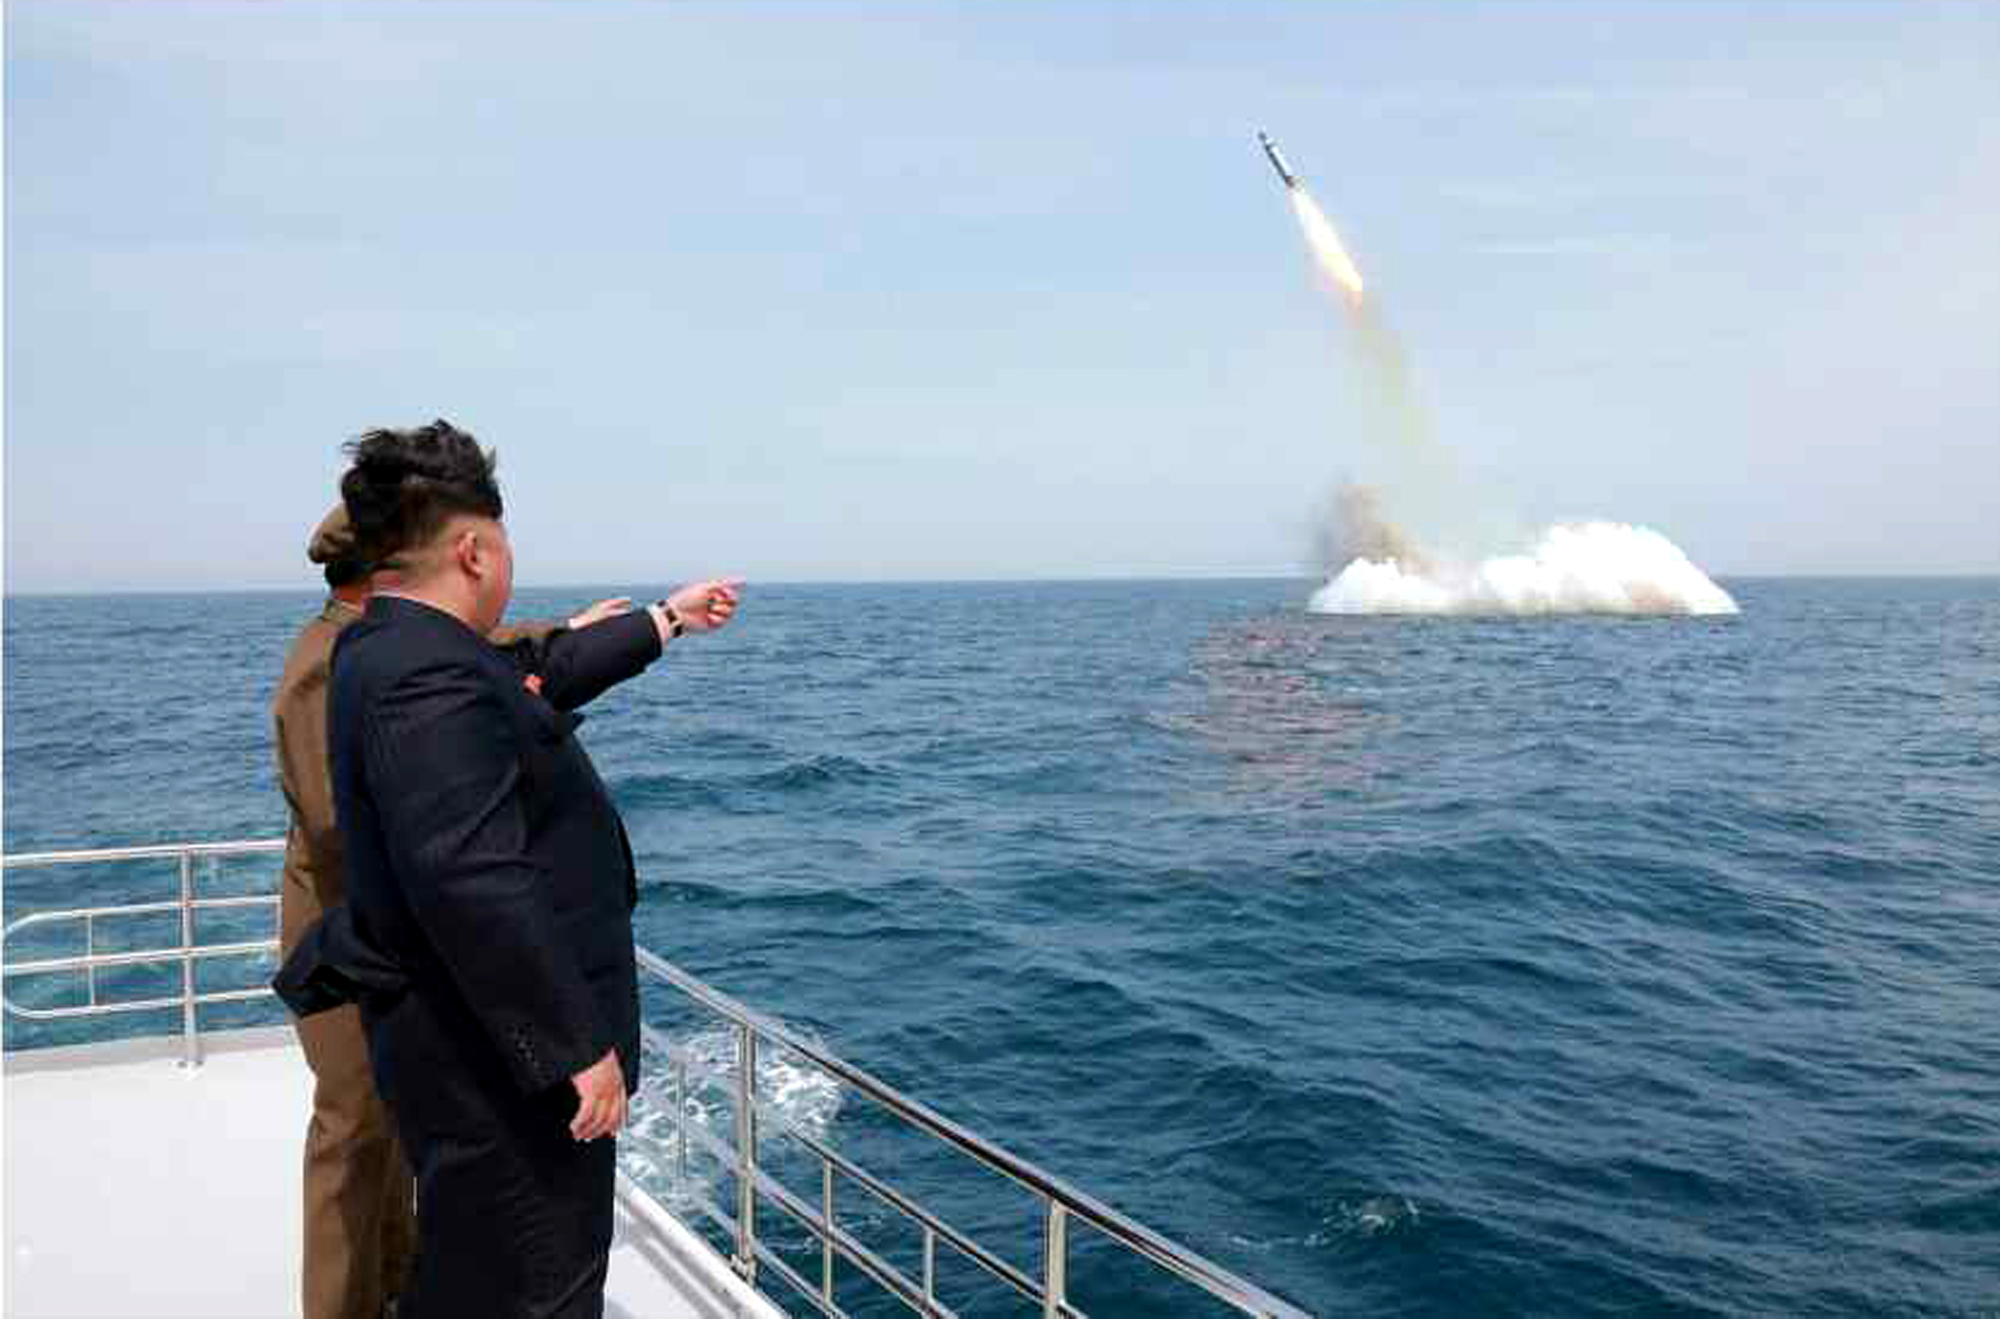  Nhà lãnh đạo Triều Tiên Kim Jong-un thị sát một vụ phóng thử tên lửa từ  tàu ngầm ở gần Sinpo thuộc vùng biển phía đông bắc Triều Tiên ngày 9/5/2015.  (Nguồn: EPA/TTXVN)